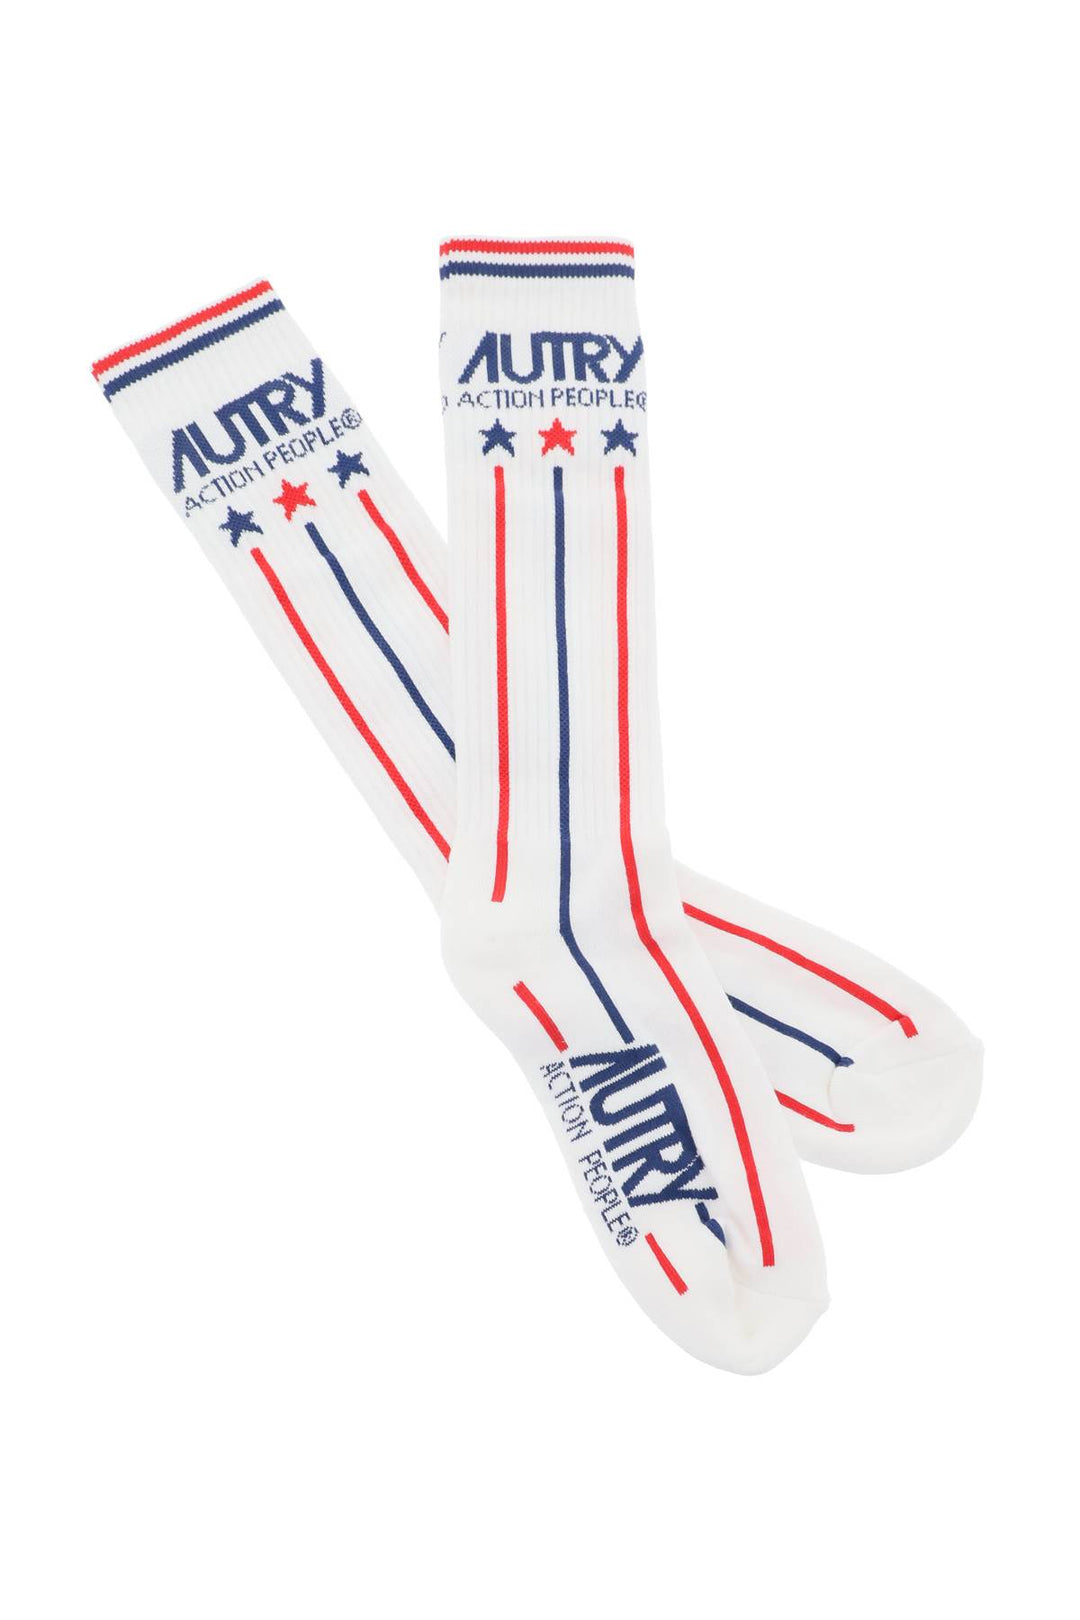 Autry Tennis Socks   White